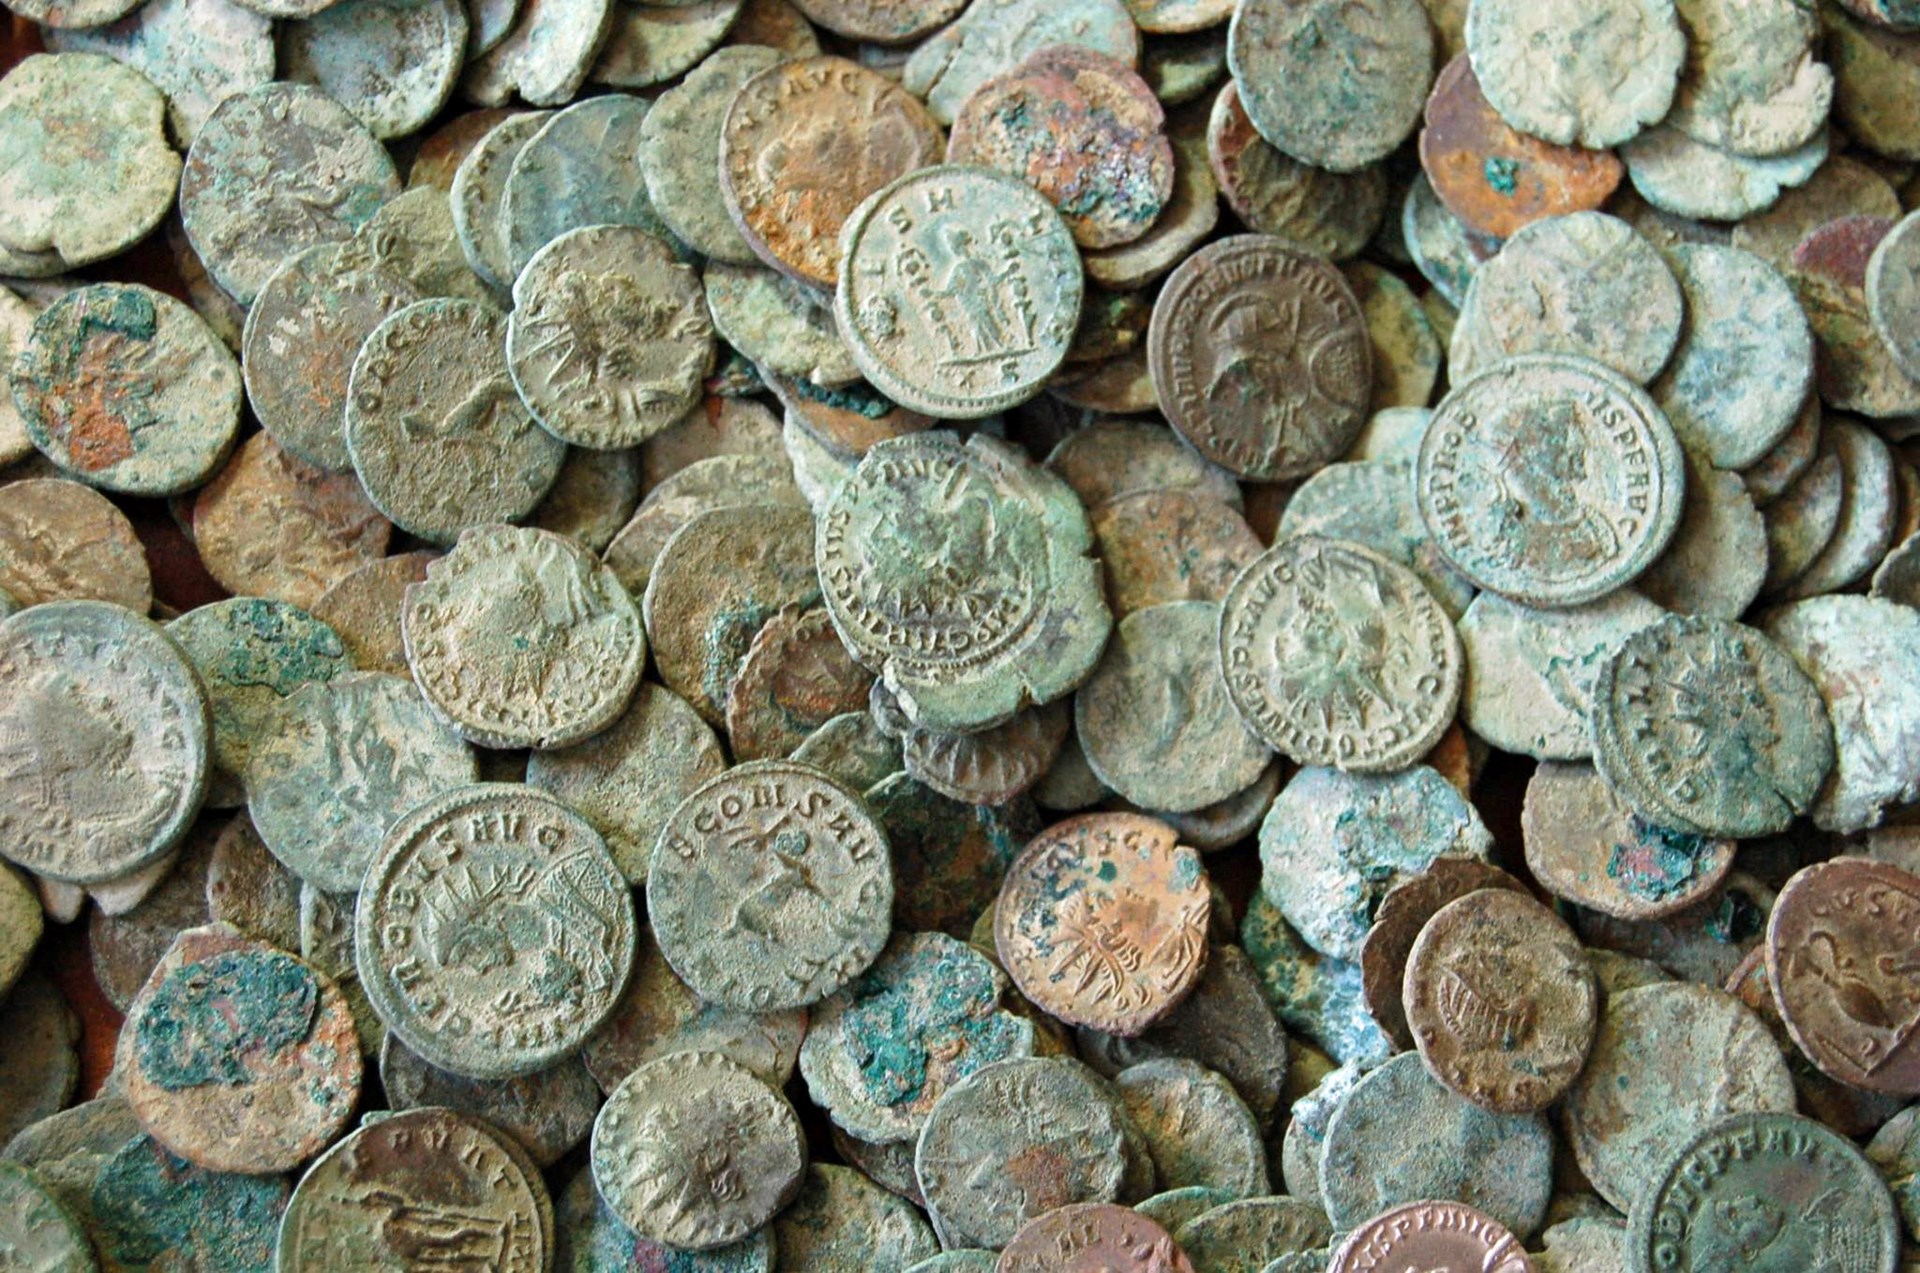 Verzameling munten: een van de vele schatten uit het Zeeuws Archeologisch Depot.